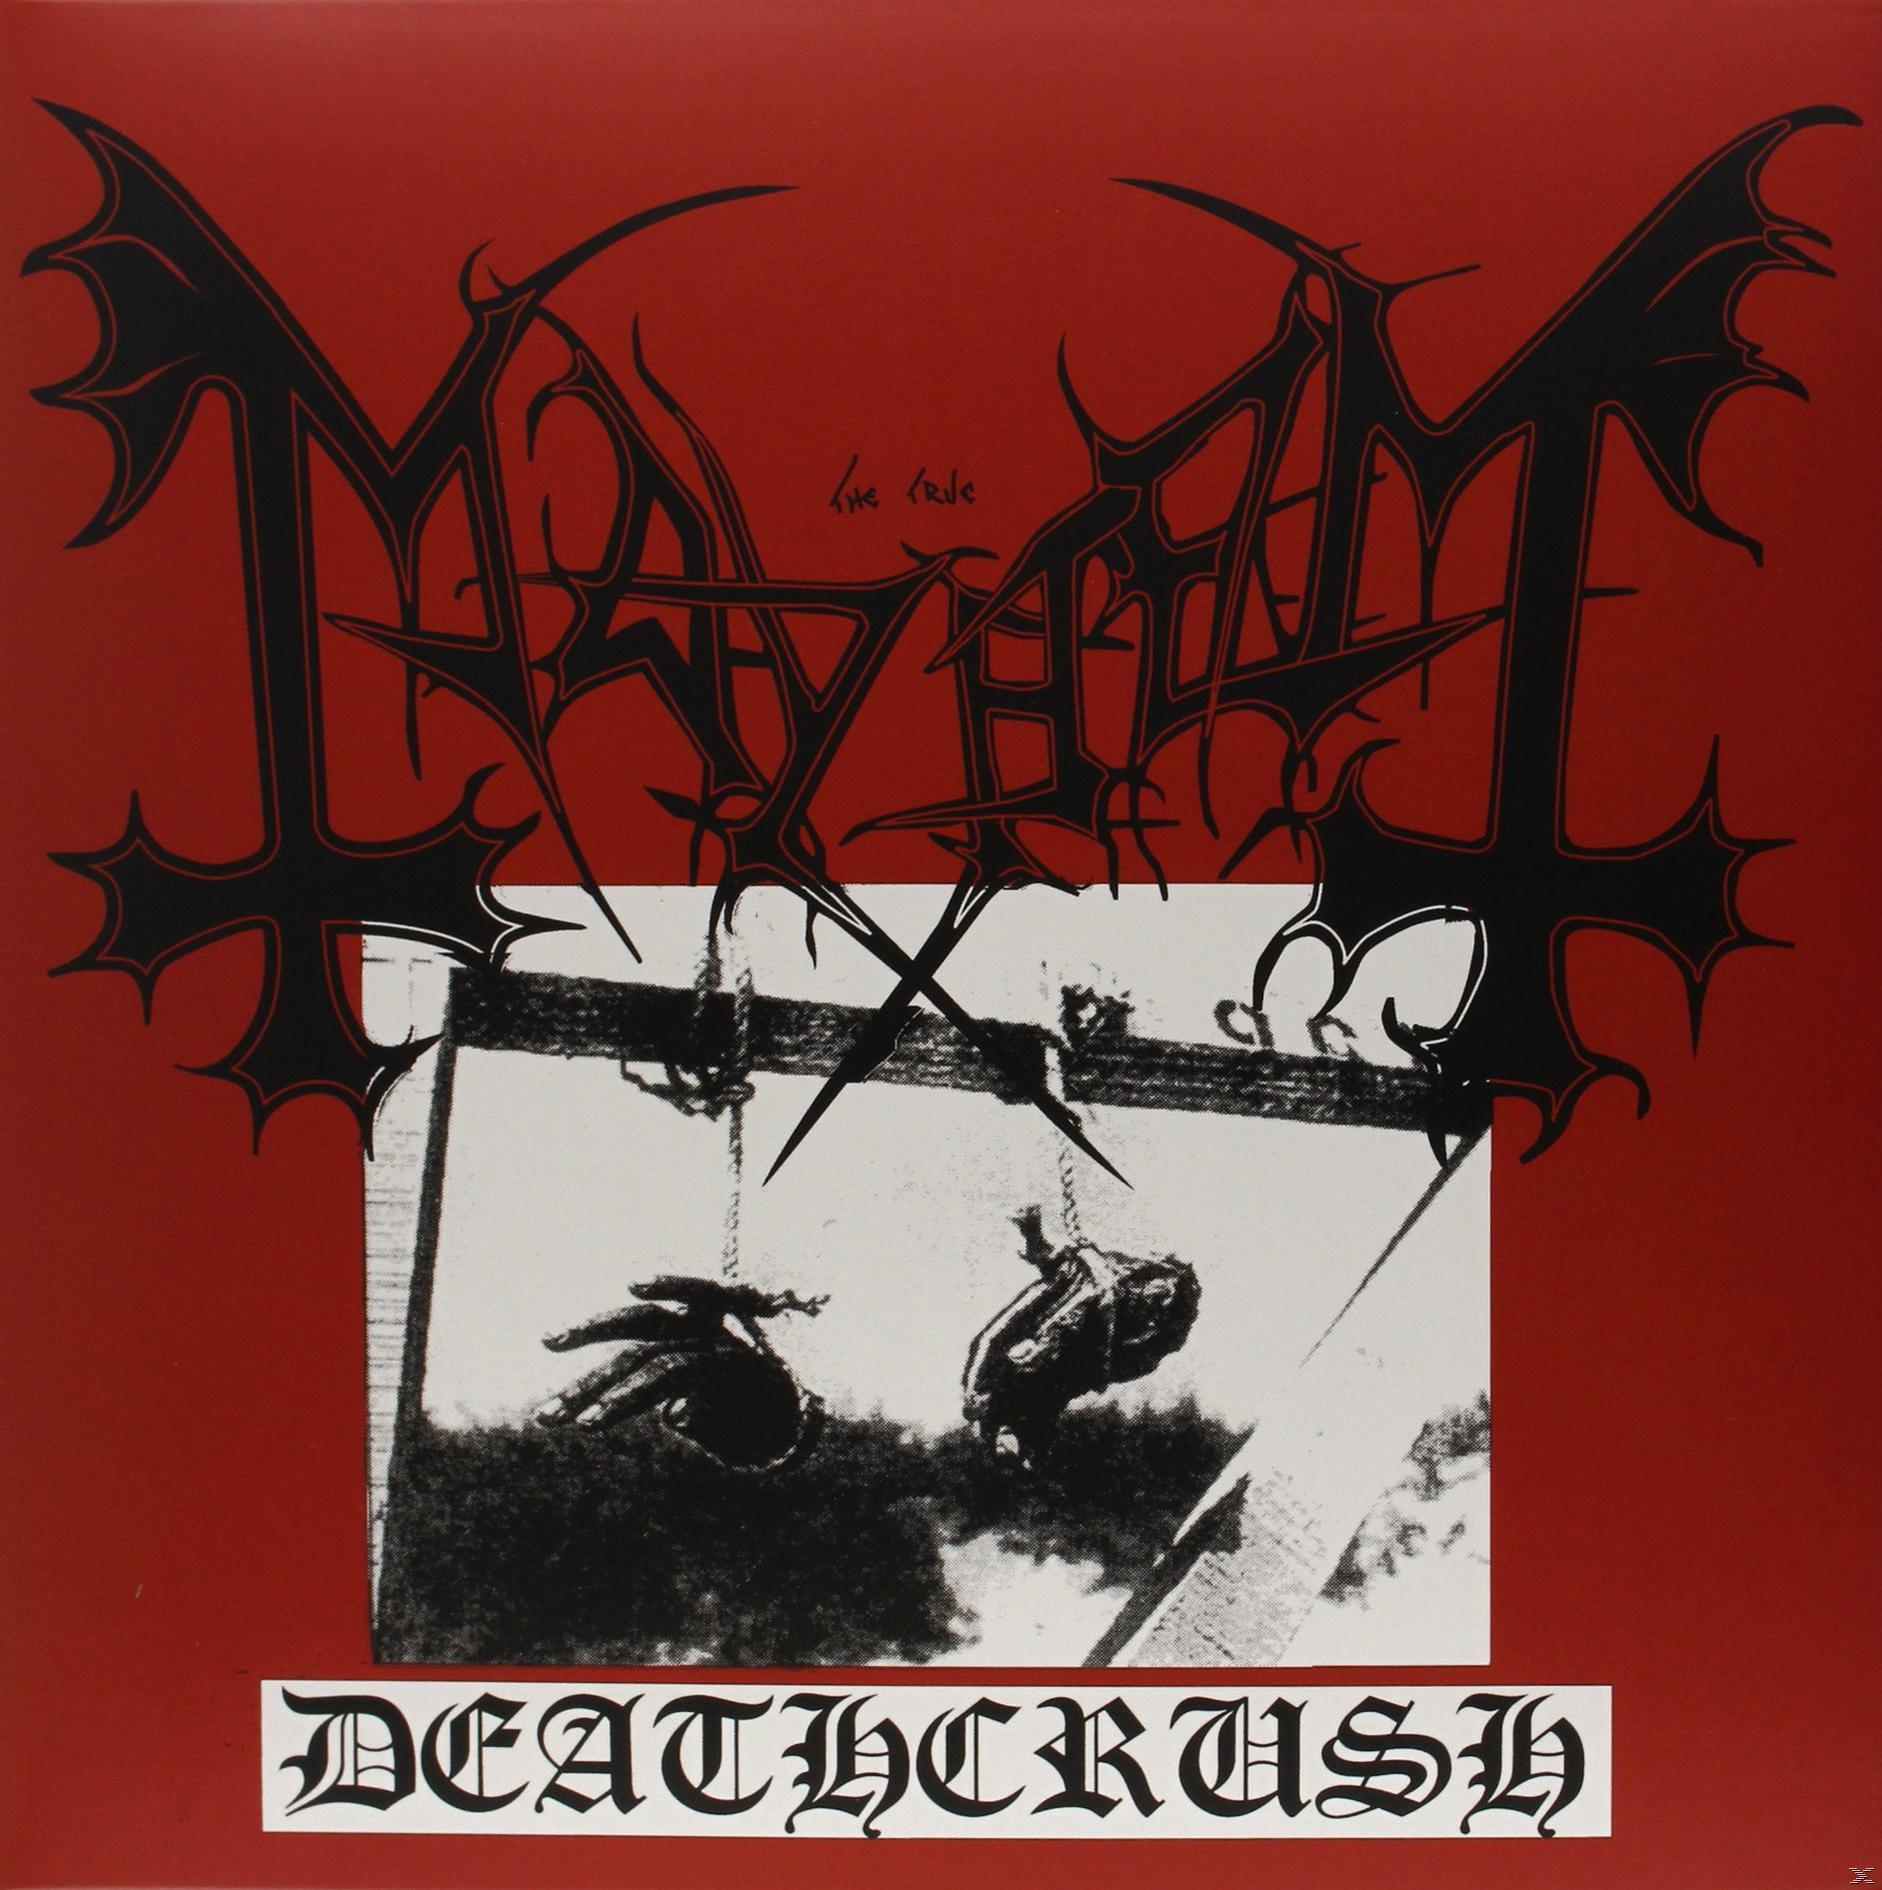 Mayhem (Vinyl) - - Deathcrush